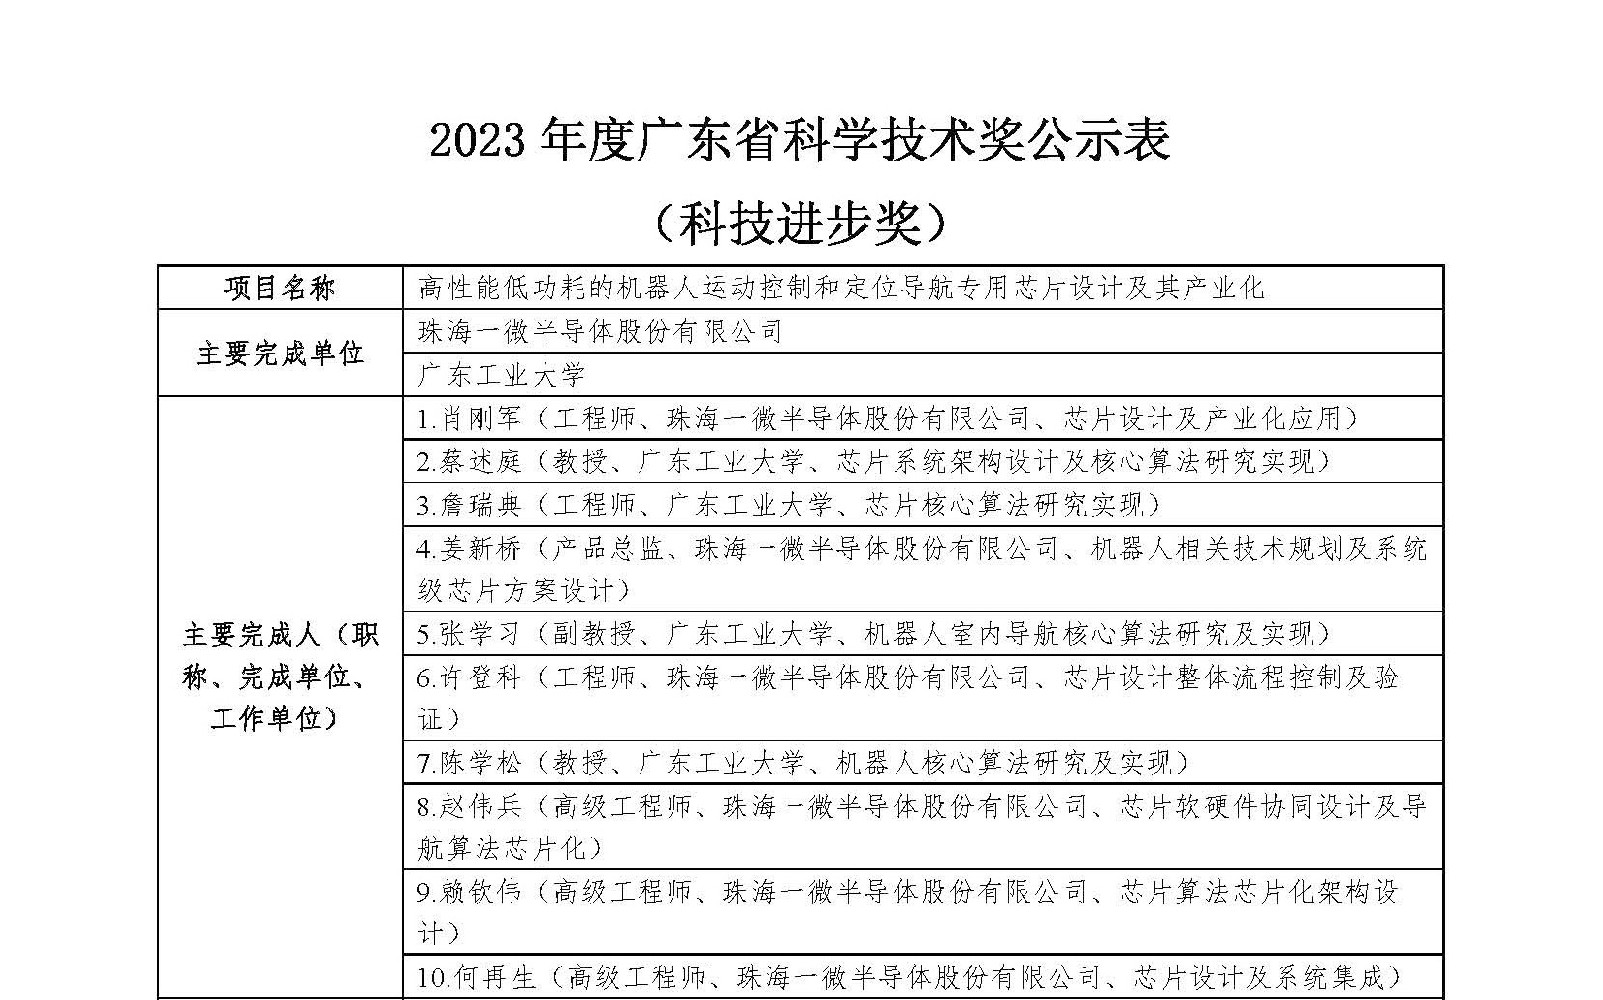 2023年度廣東省科學技術獎公示表